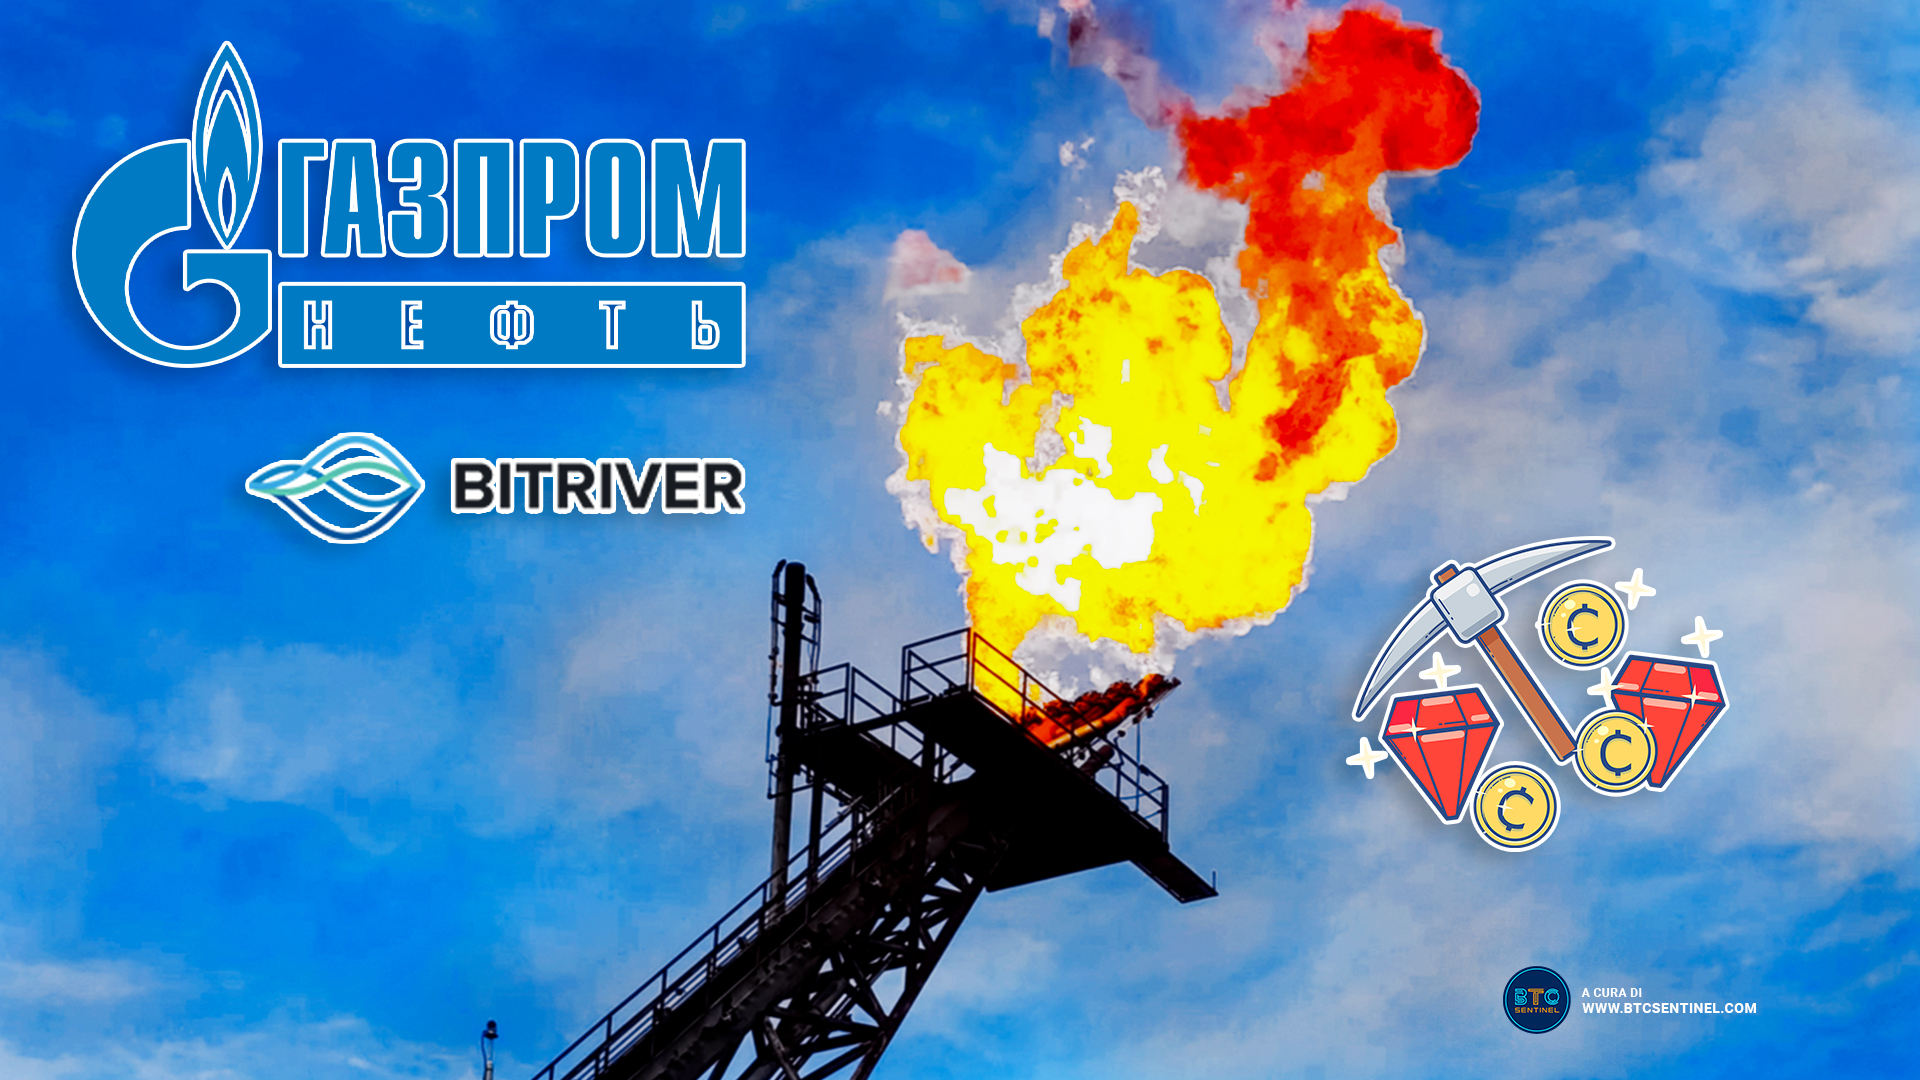 Bitriver minerà criptovalute utilizzando il gas in eccesso di Gazprom-Neft